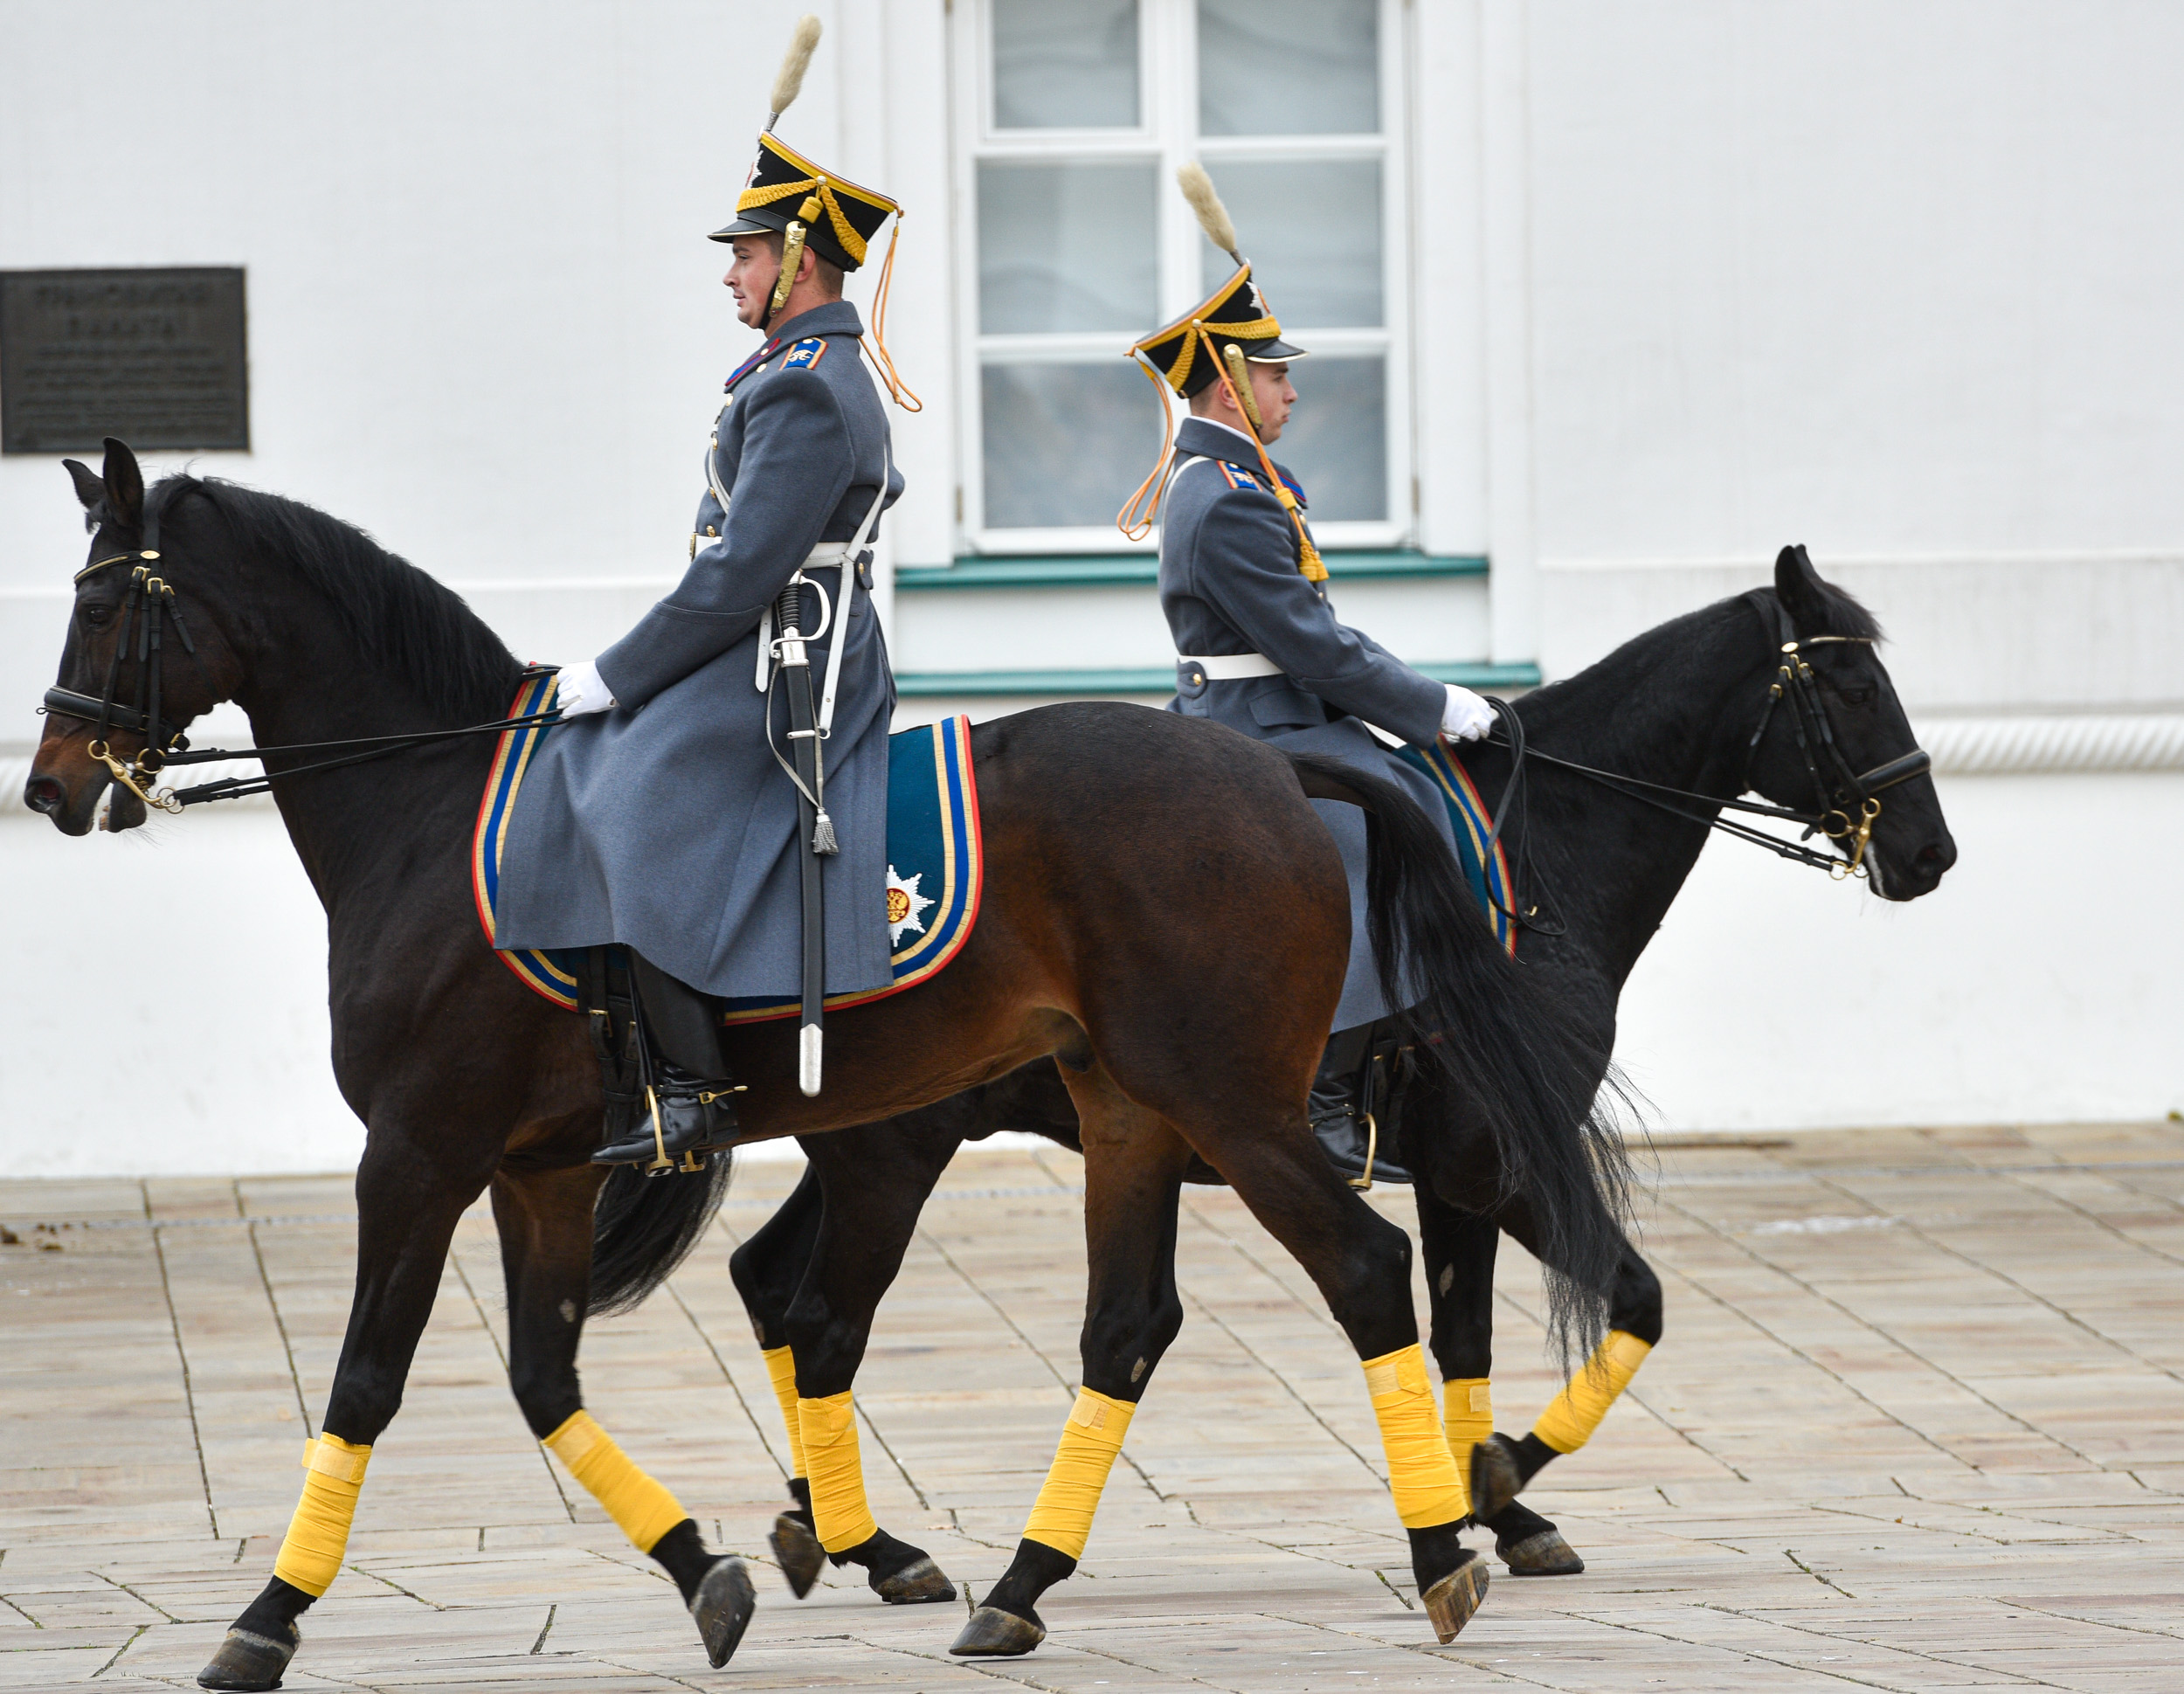 развод пеших и конных караулов президентского полка в кремле